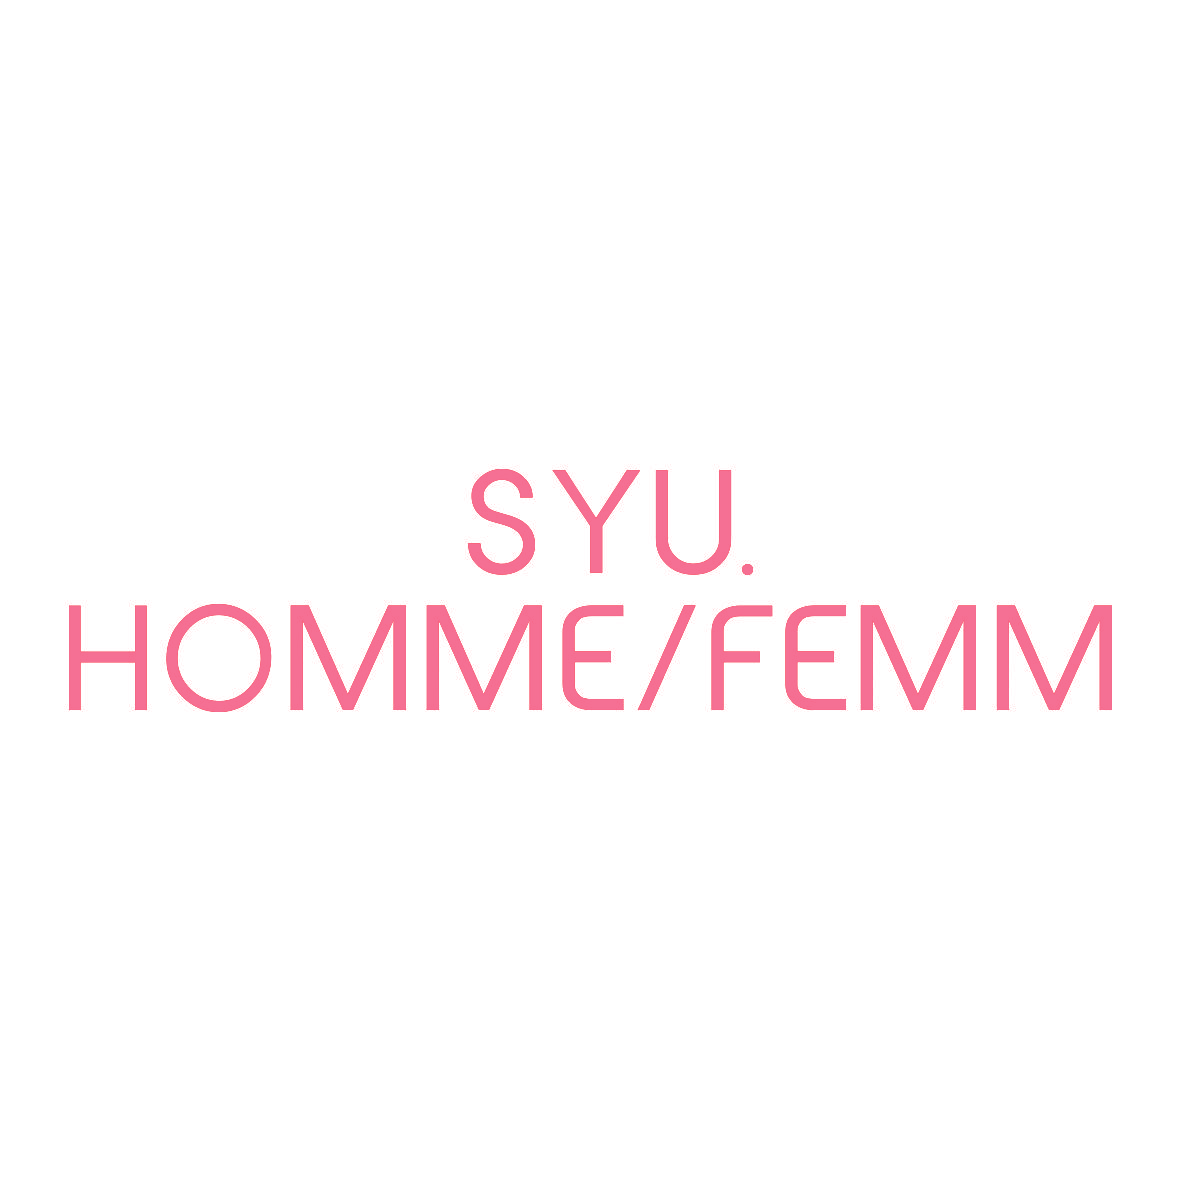 SYU. HOMMEFEMM